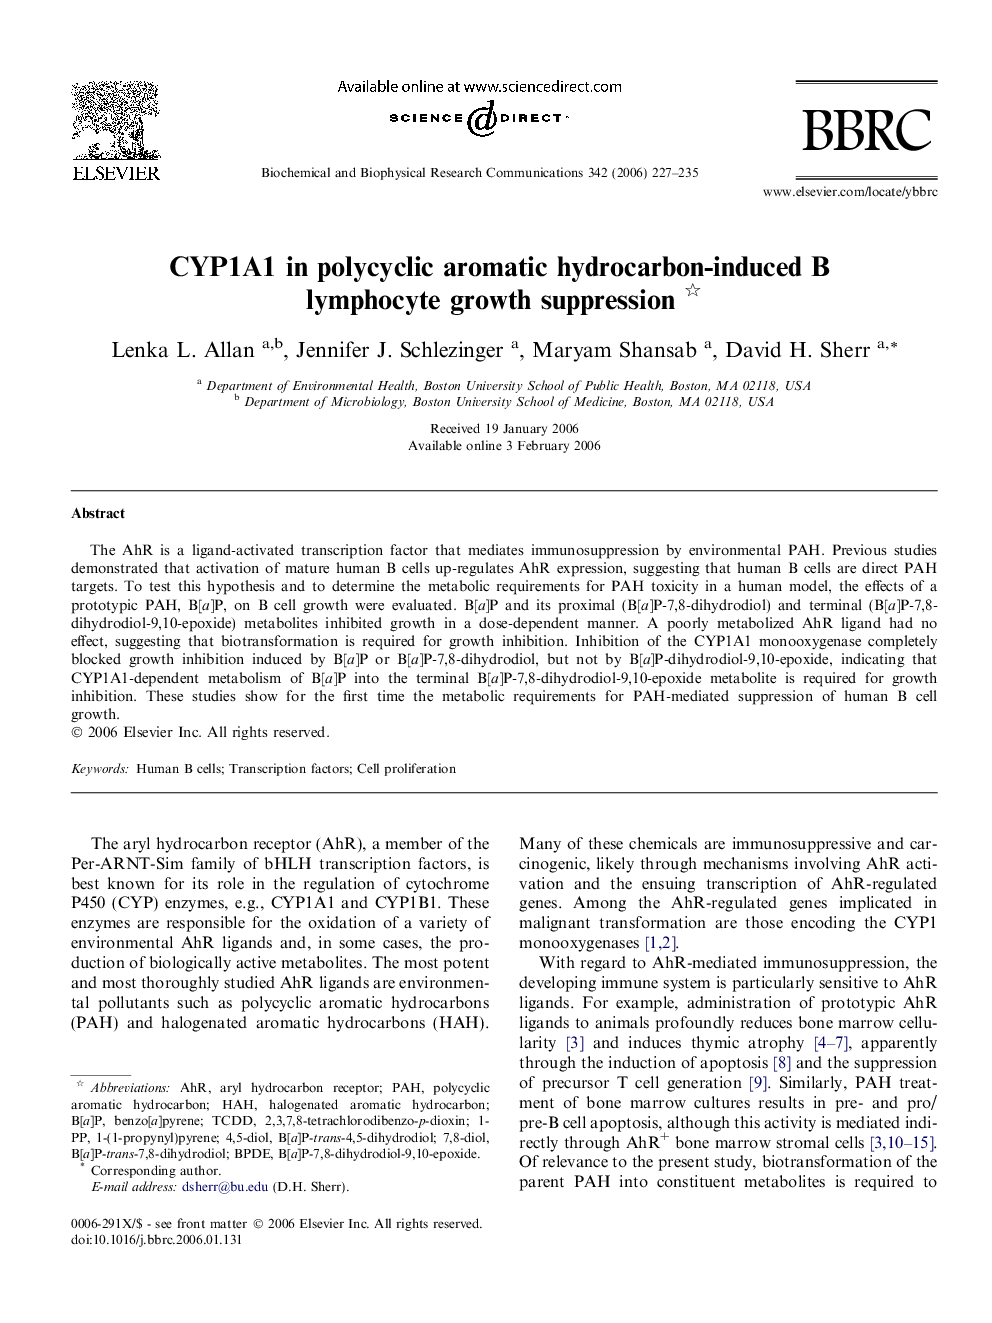 CYP1A1 in polycyclic aromatic hydrocarbon-induced B lymphocyte growth suppression 